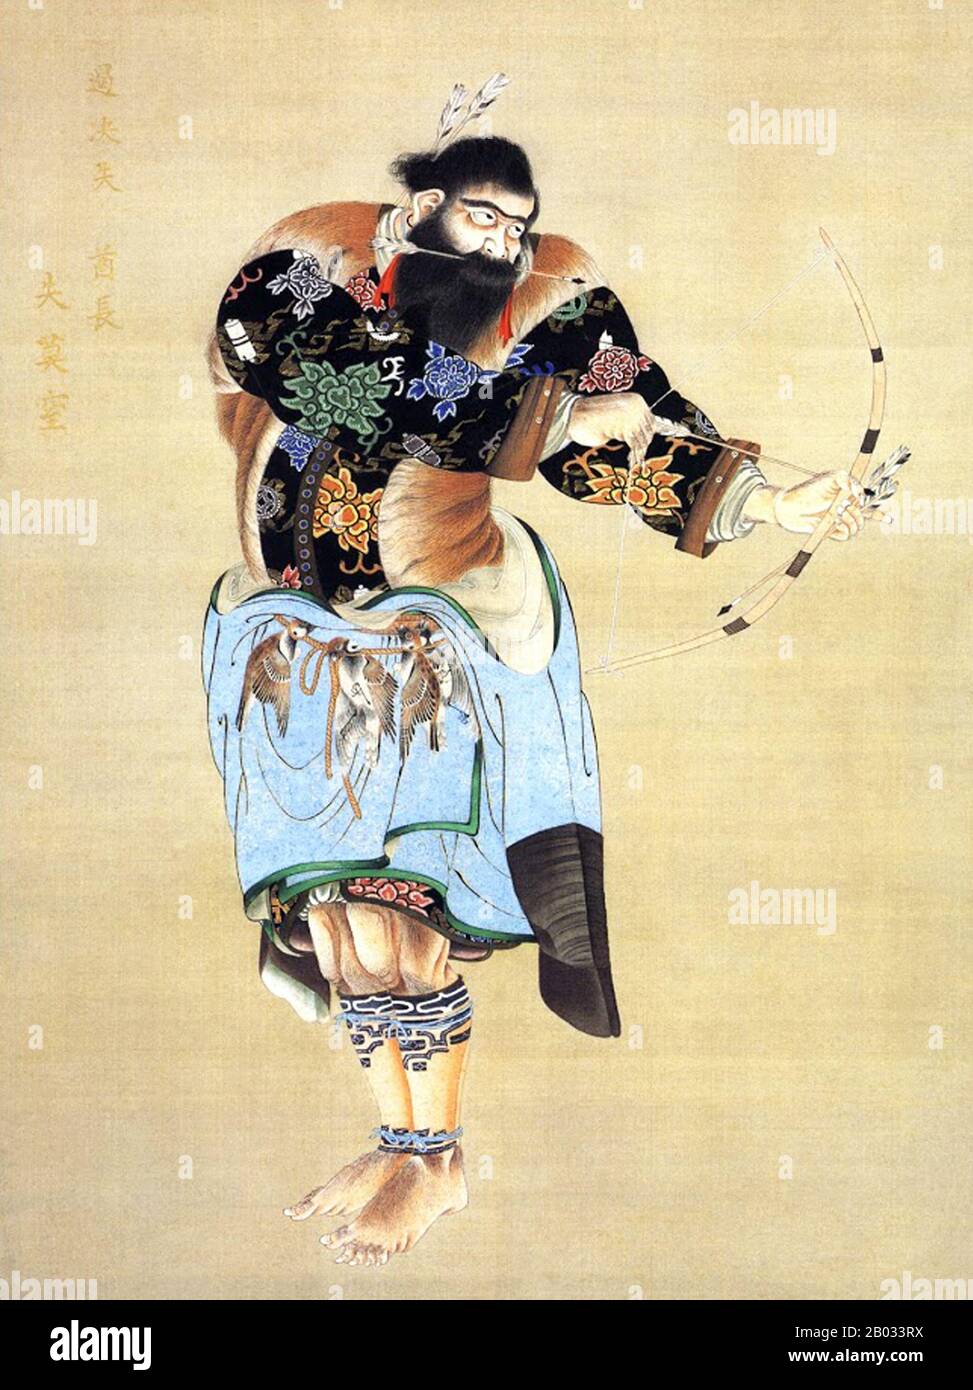 Kakizaki Hakyo (25. Juni 1764 - 26. Juli 1826) war ein Samurai-Künstler aus dem Matsumae-Clan. Sein erster künstlerischer Erfolg war eine Gruppe von 12 Porträts namens "The Ishu Retsuzo". Die Porträts waren von 12 Ainu-Chefs aus dem nördlichen Bereich von Ezo, heute Hokkaido. Stockfoto